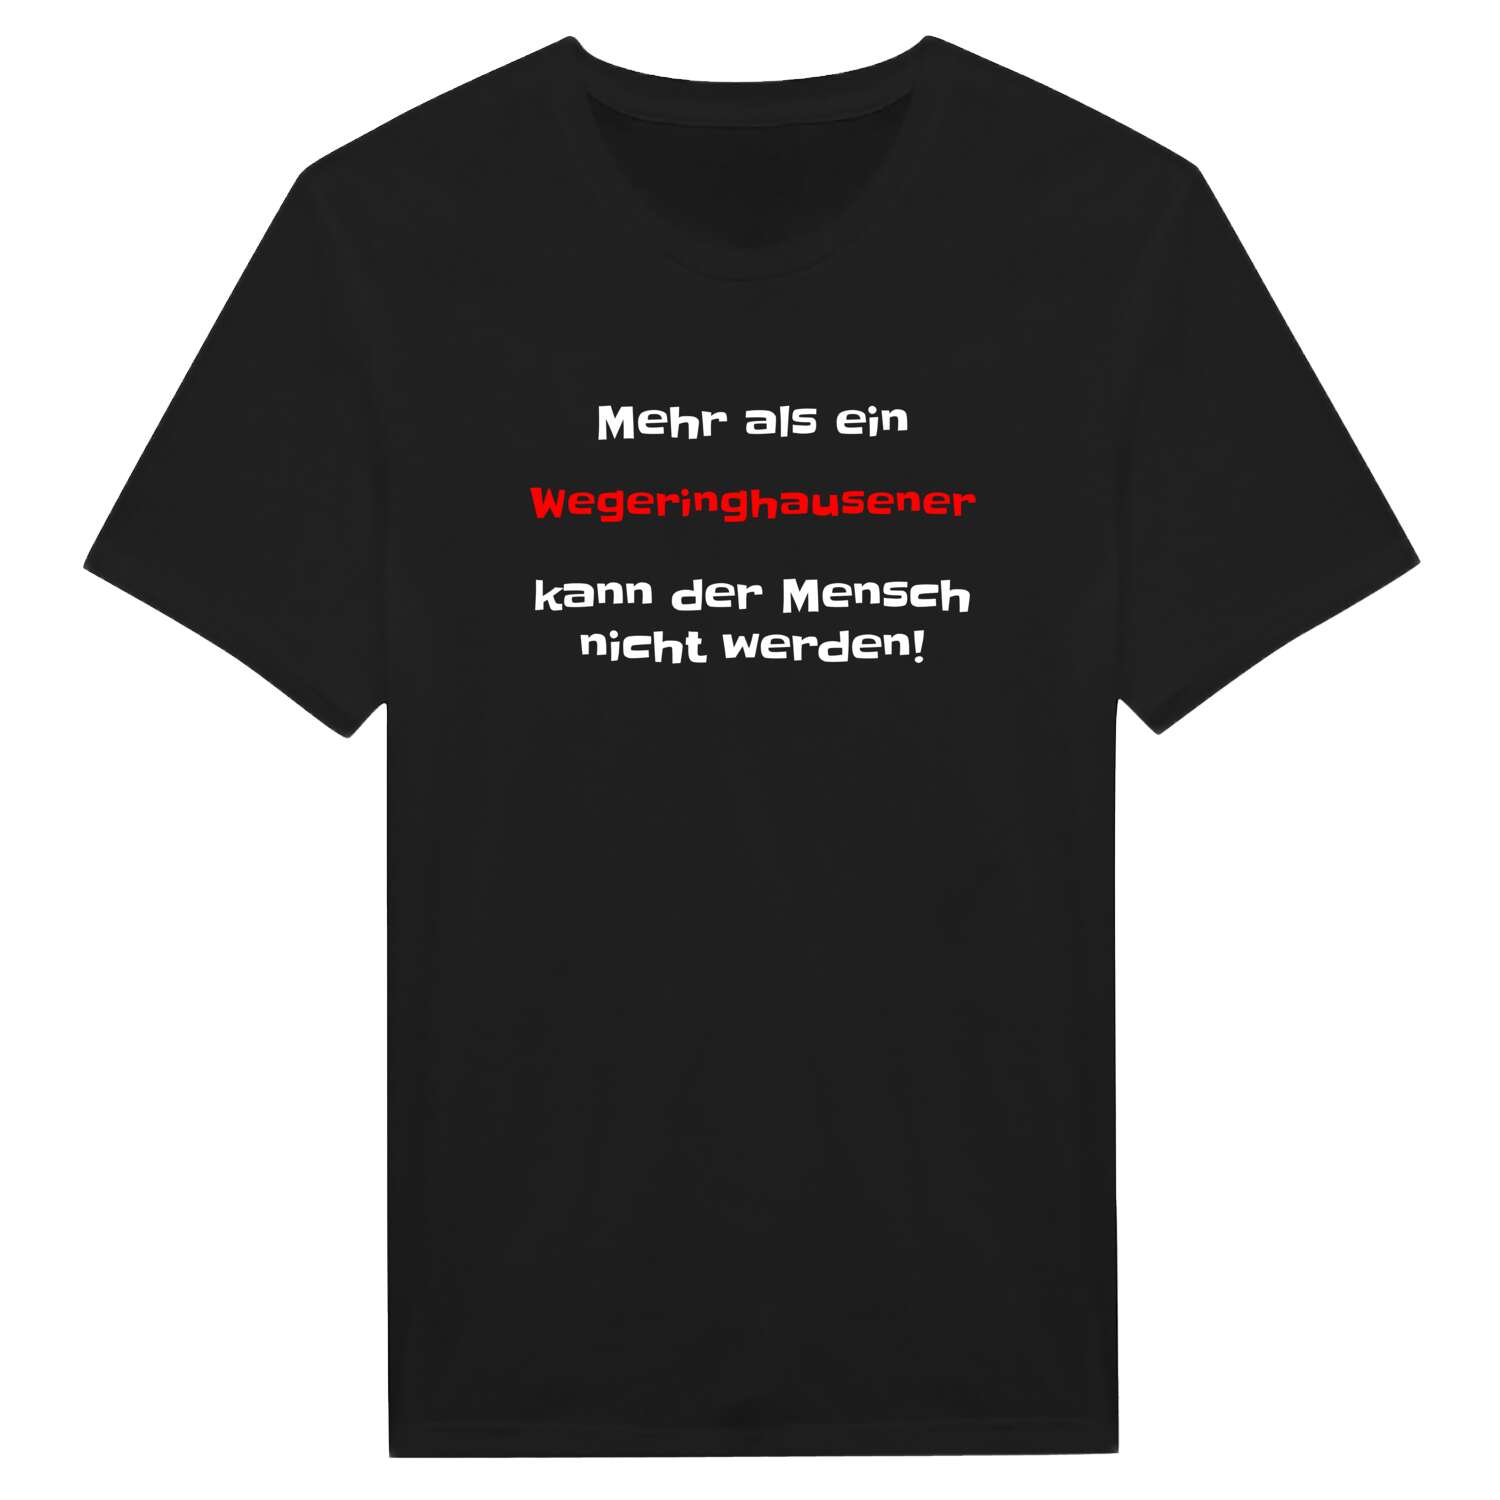 Wegeringhausen T-Shirt »Mehr als ein«